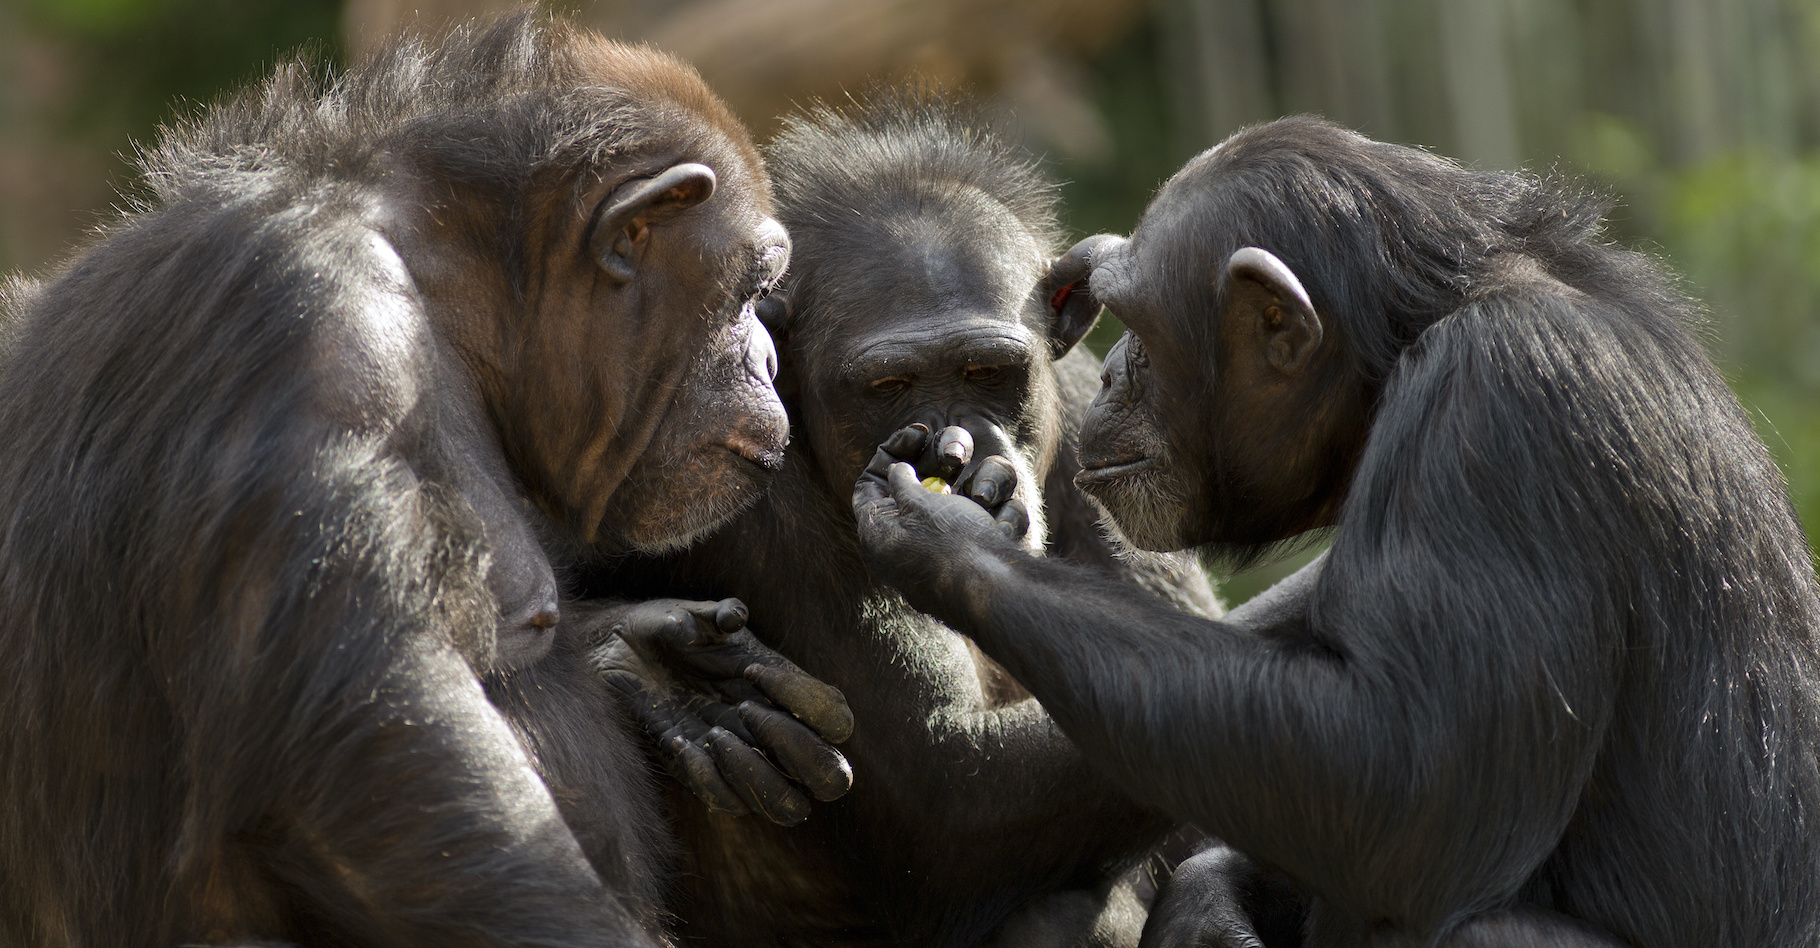 Au parc national de Loango (Congo), des chimpanzés ont été observés se réunissant pour tuer des gorilles. Un comportement qui surprend les chercheurs. © Patrick Rolands, Adobe Stock